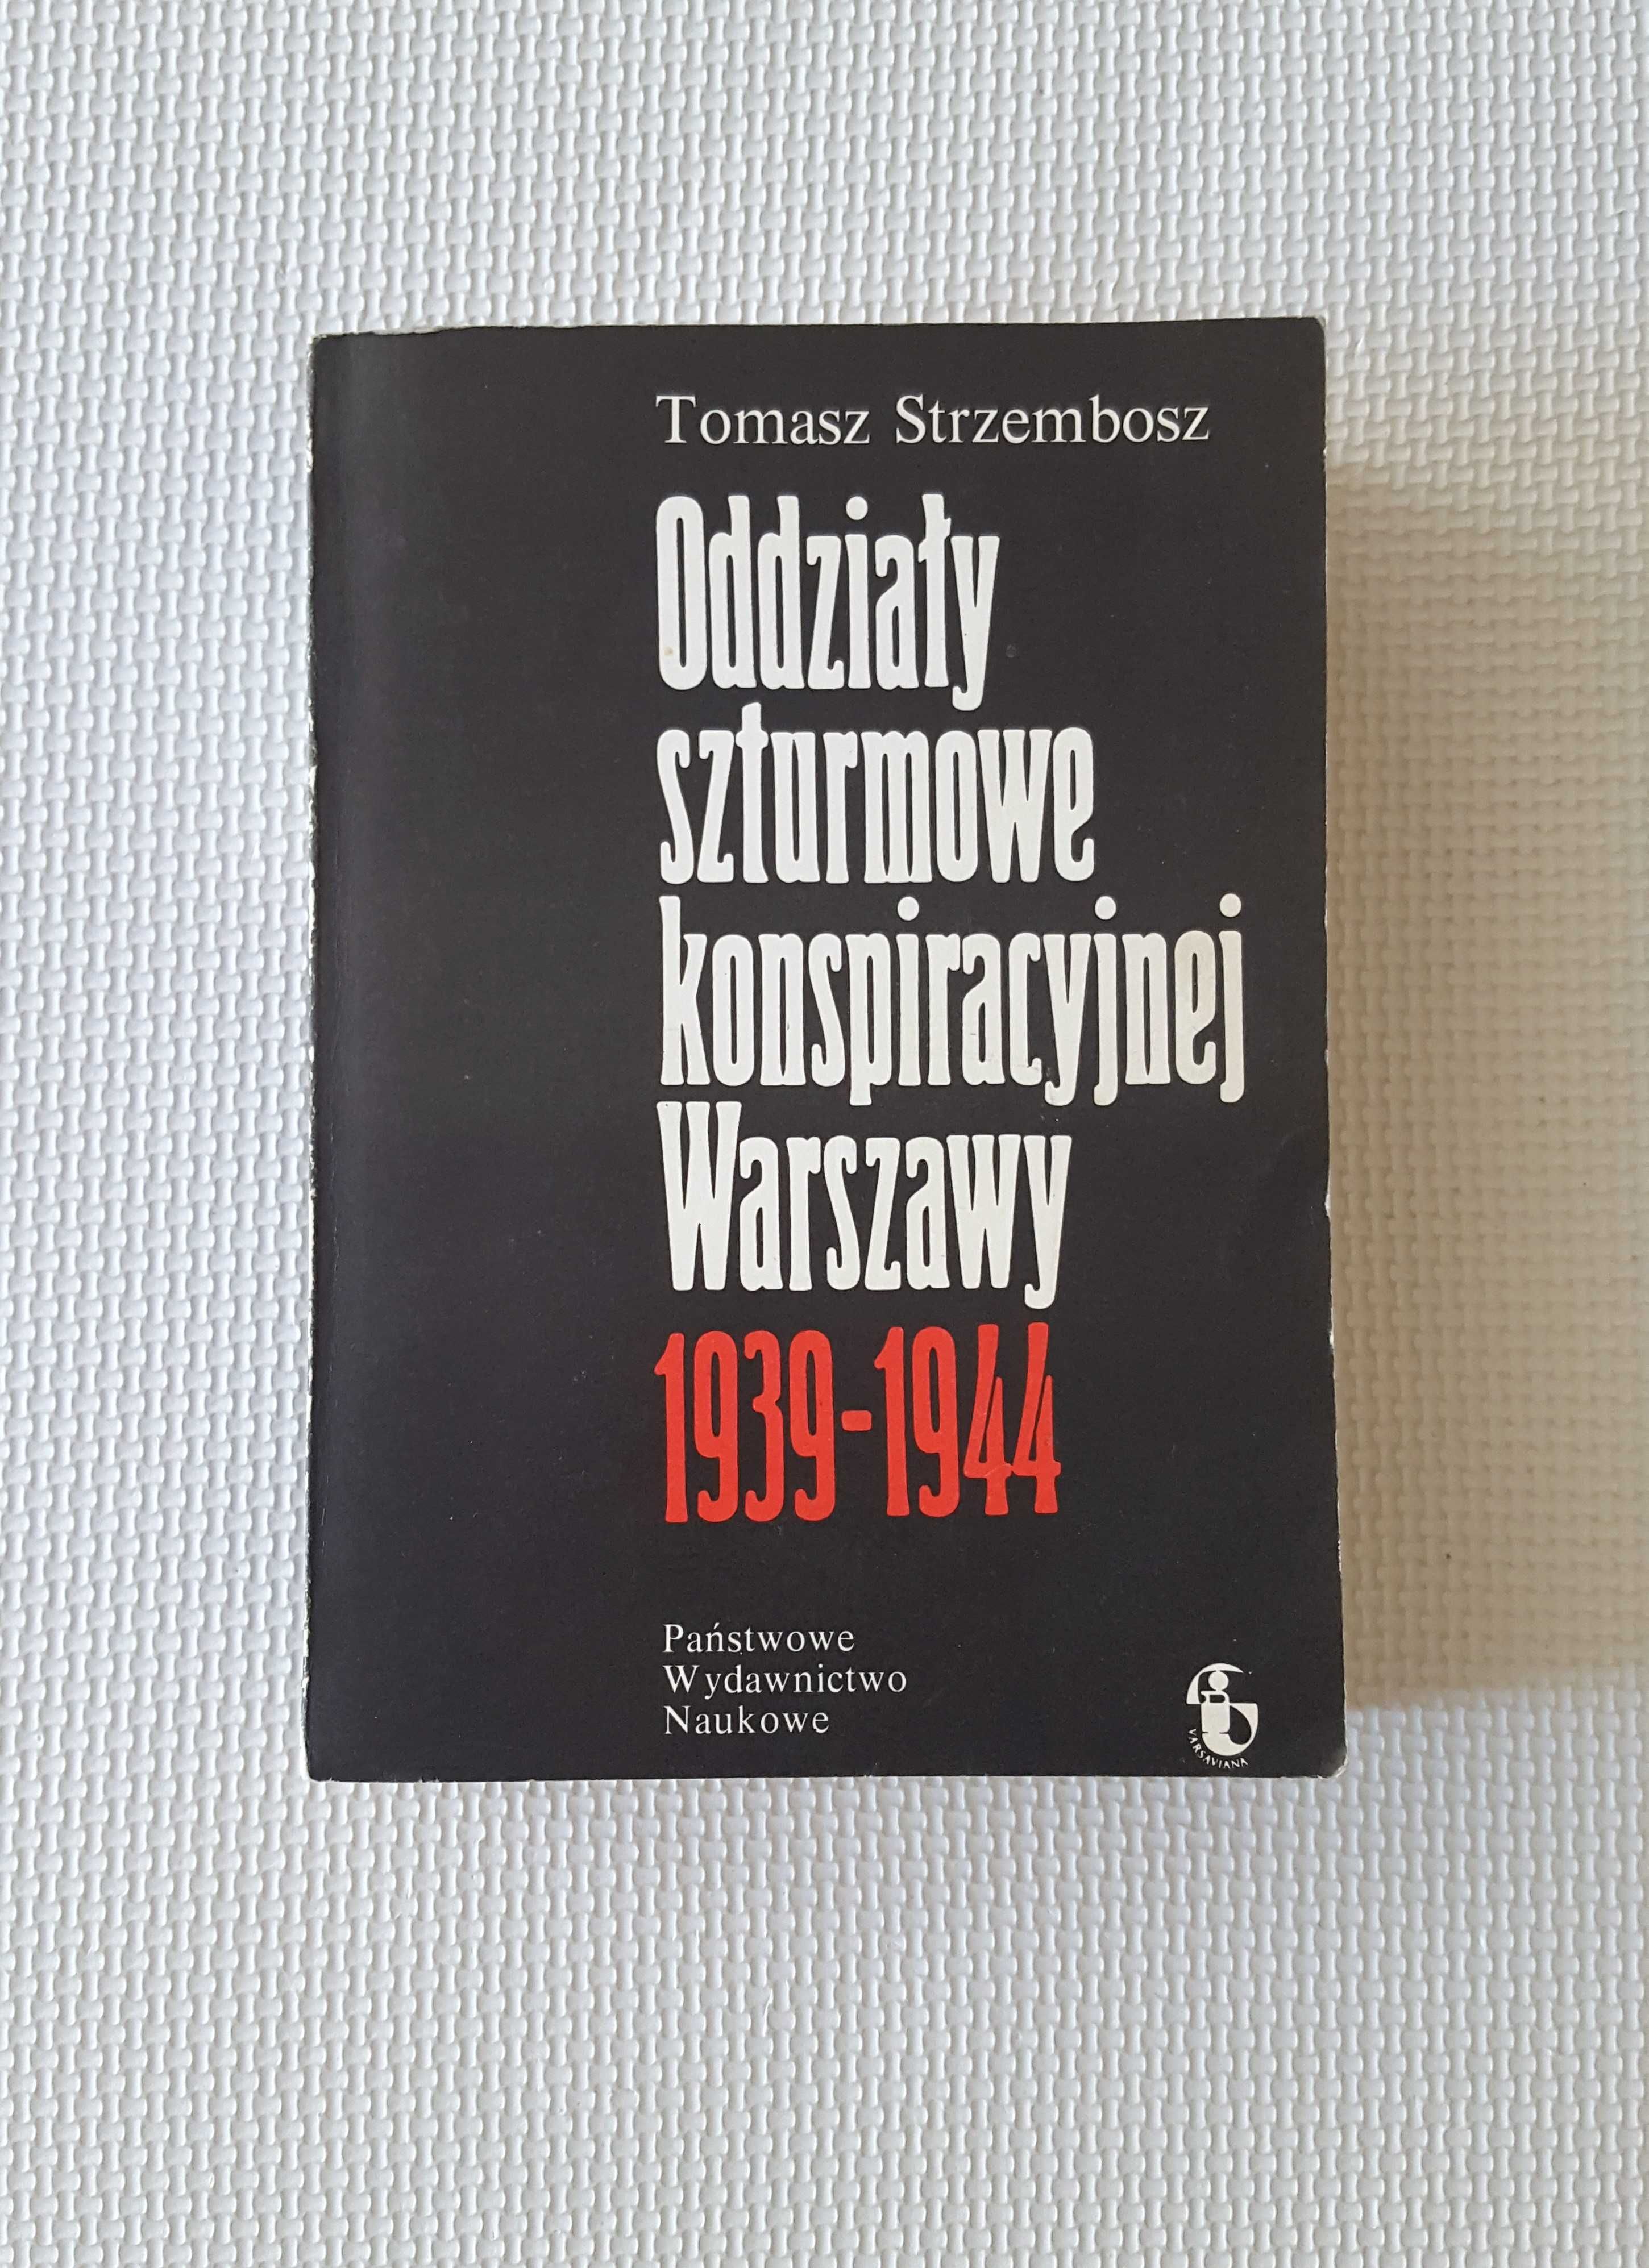 Oddziały szturmowe konspiracyjnej Warszawy 1939-44 Tomasz Strzembosz